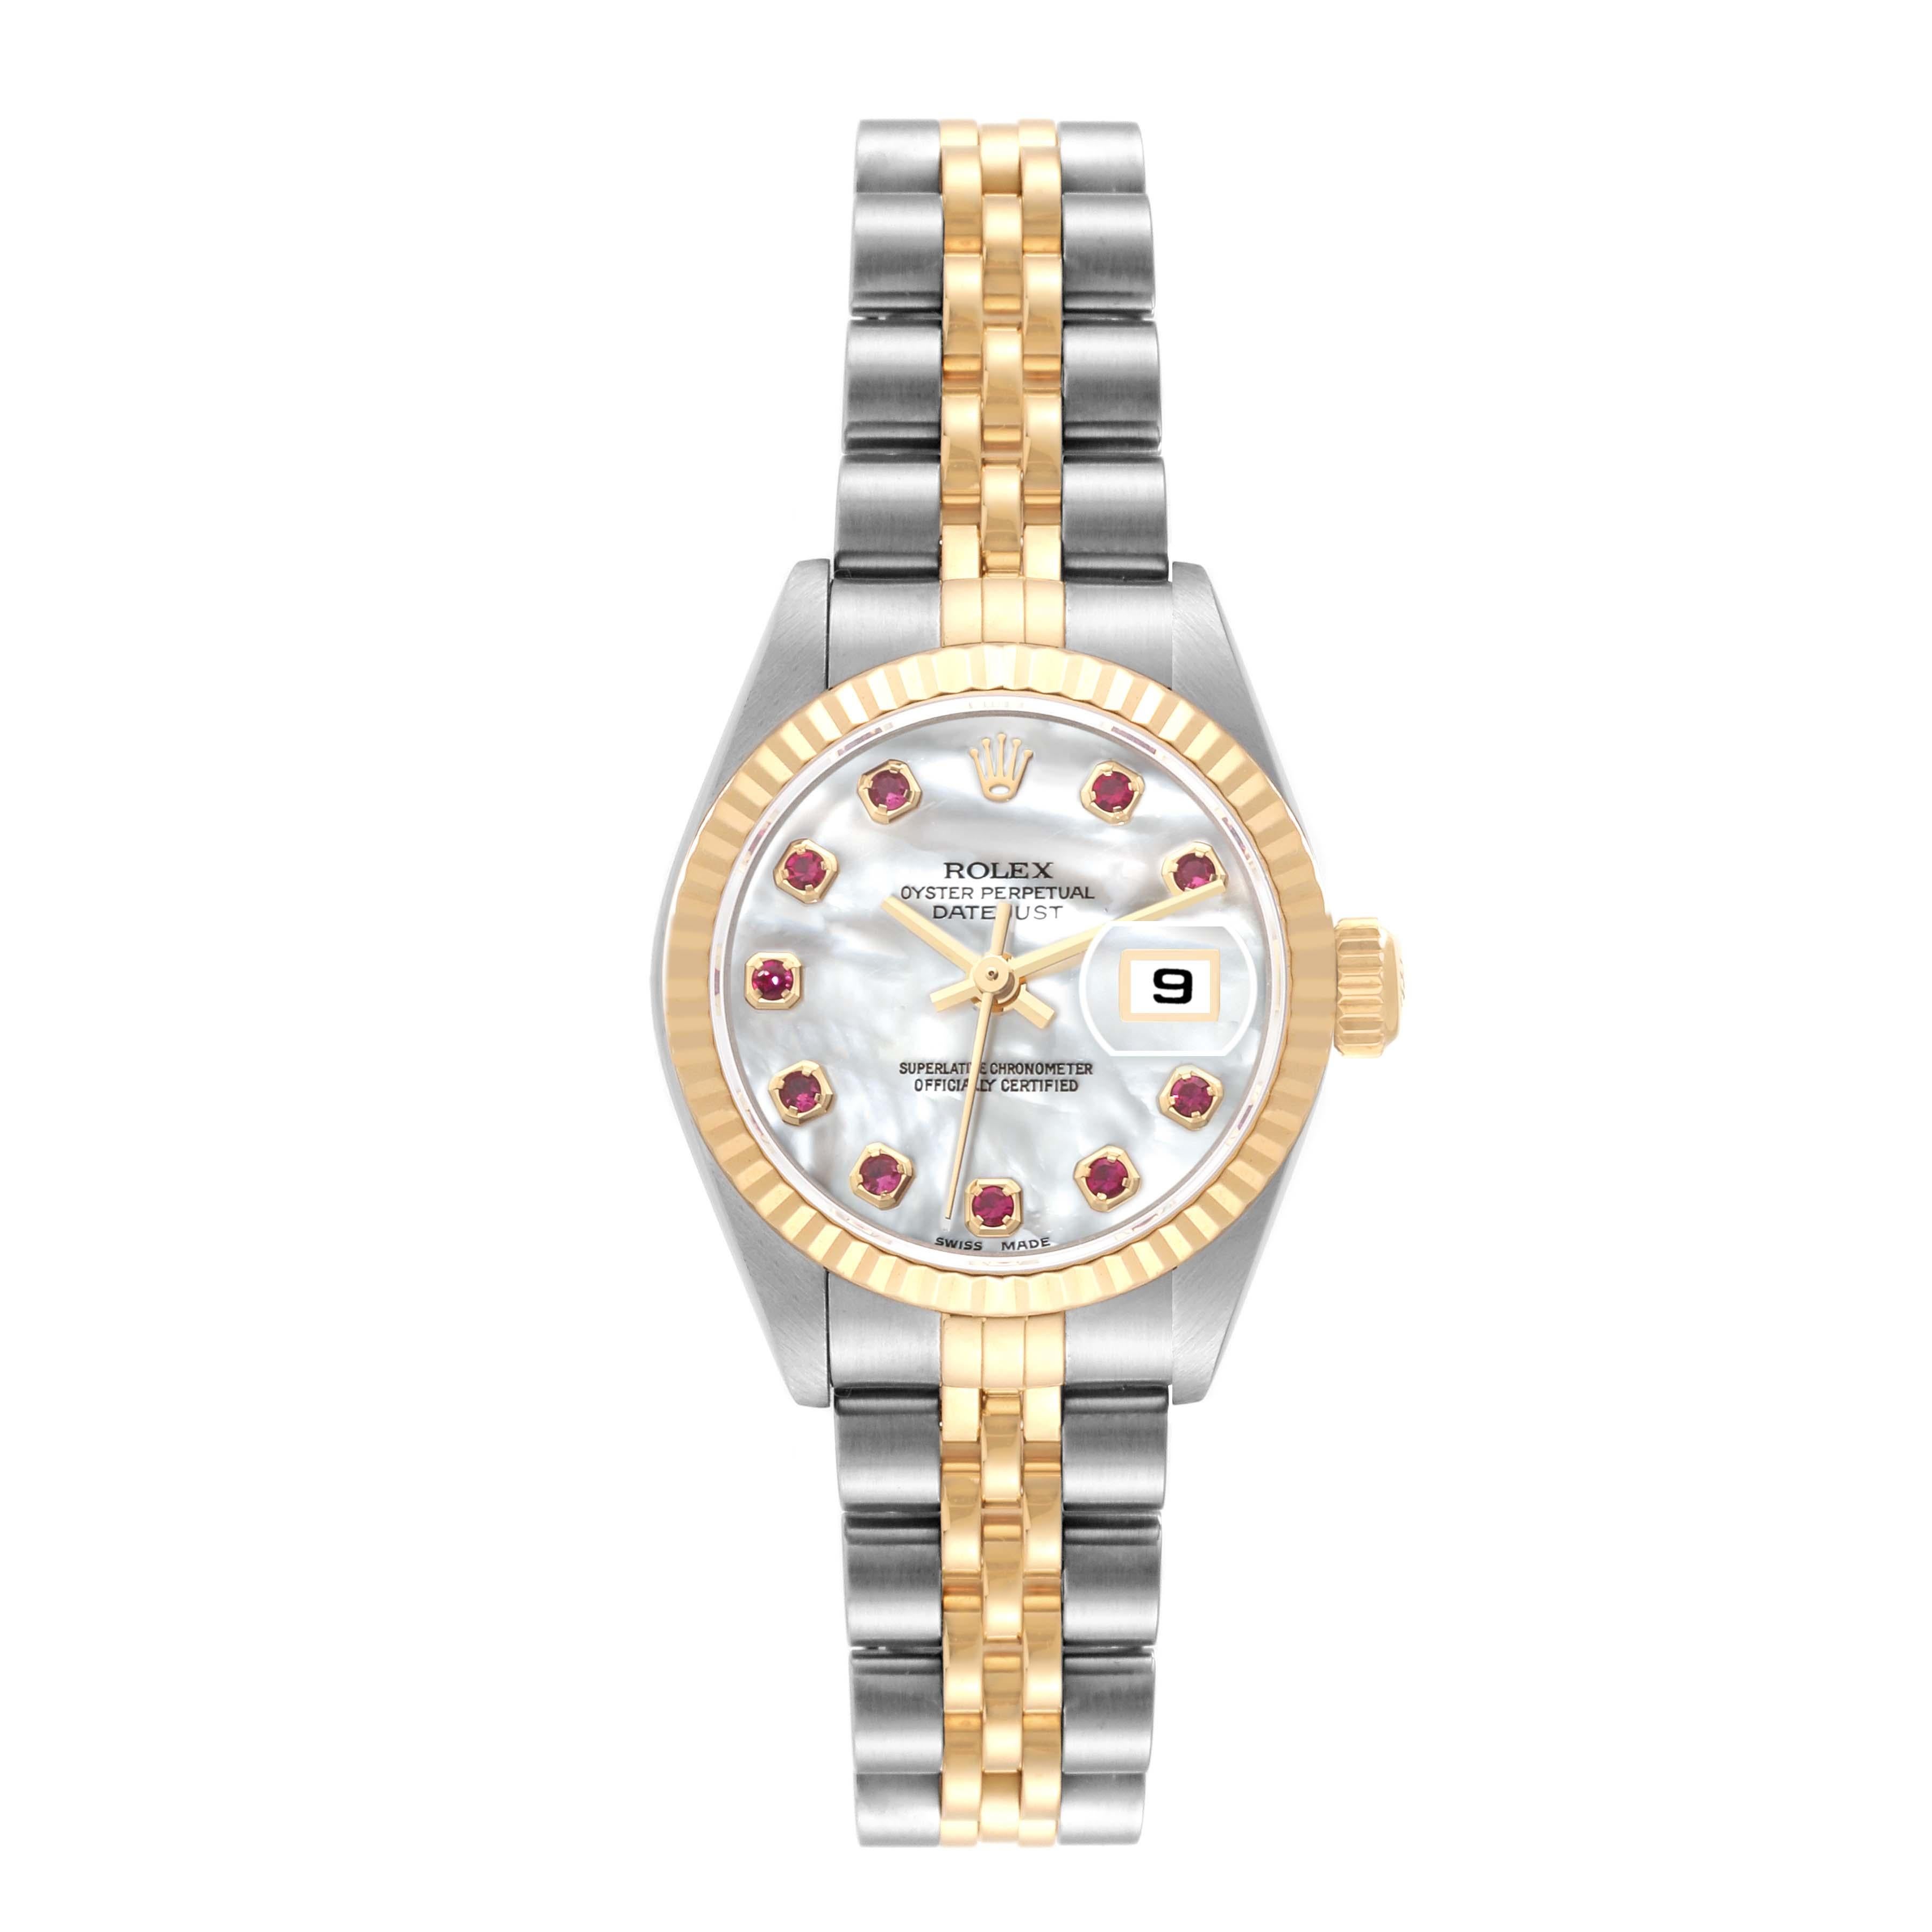 Rolex Datejust Steel Yellow Gold Mother Of Pearl Ruby Dial Ladies Watch 79173. Mouvement automatique à remontage automatique, officiellement certifié chronomètre. Boîtier oyster en acier inoxydable de 26 mm de diamètre. Logo Rolex sur une couronne